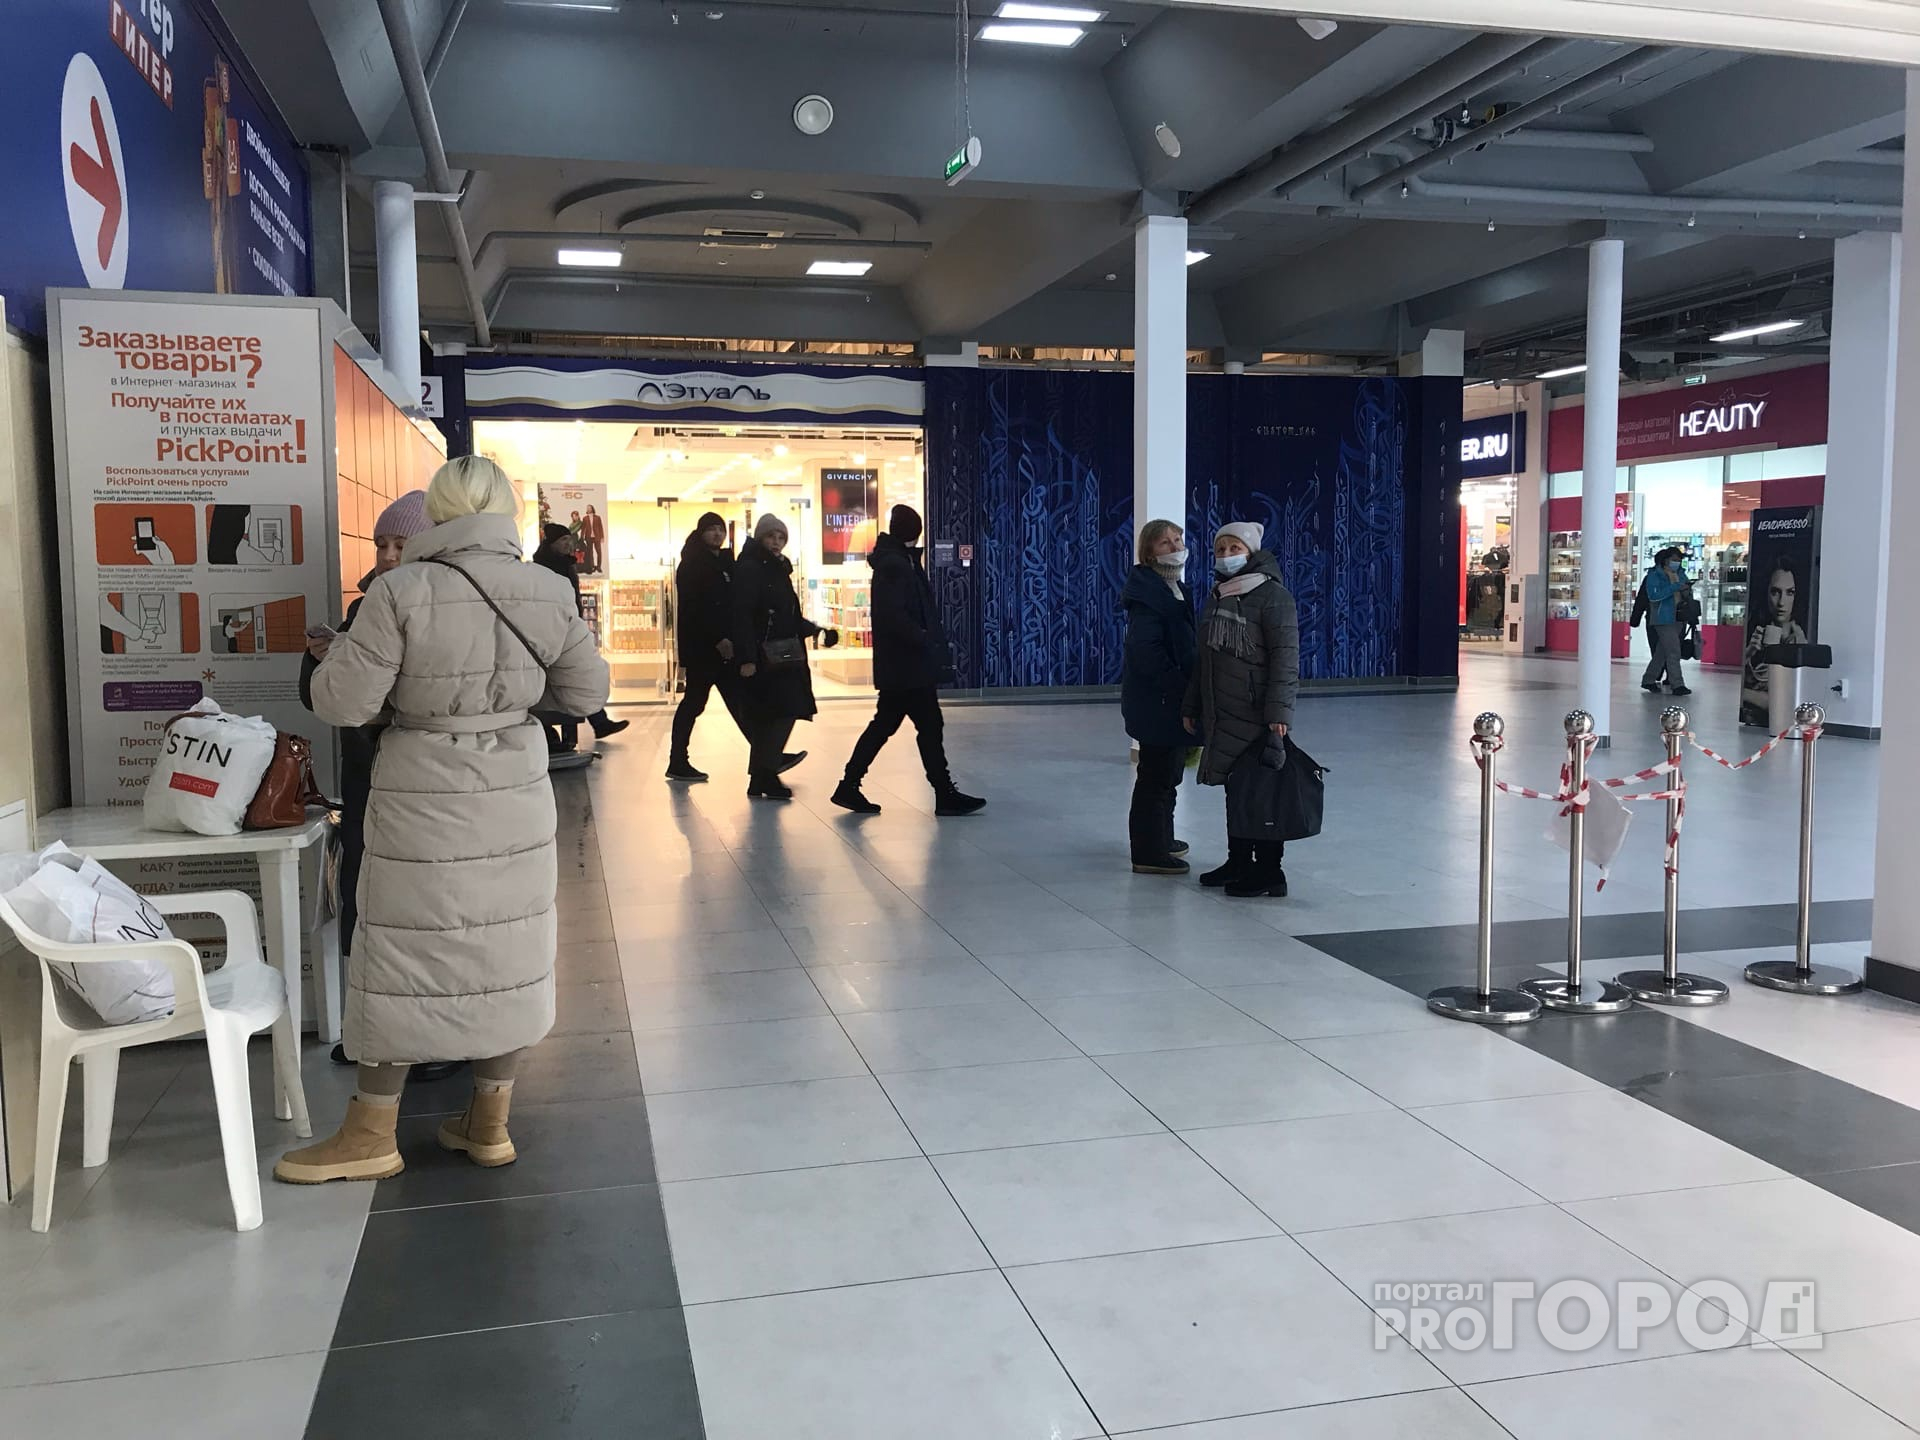 Николаев поручил ужесточить проверку QR-кодов в торговых центрах: "Из-за пренебрежительного отношения будем принимать меры"